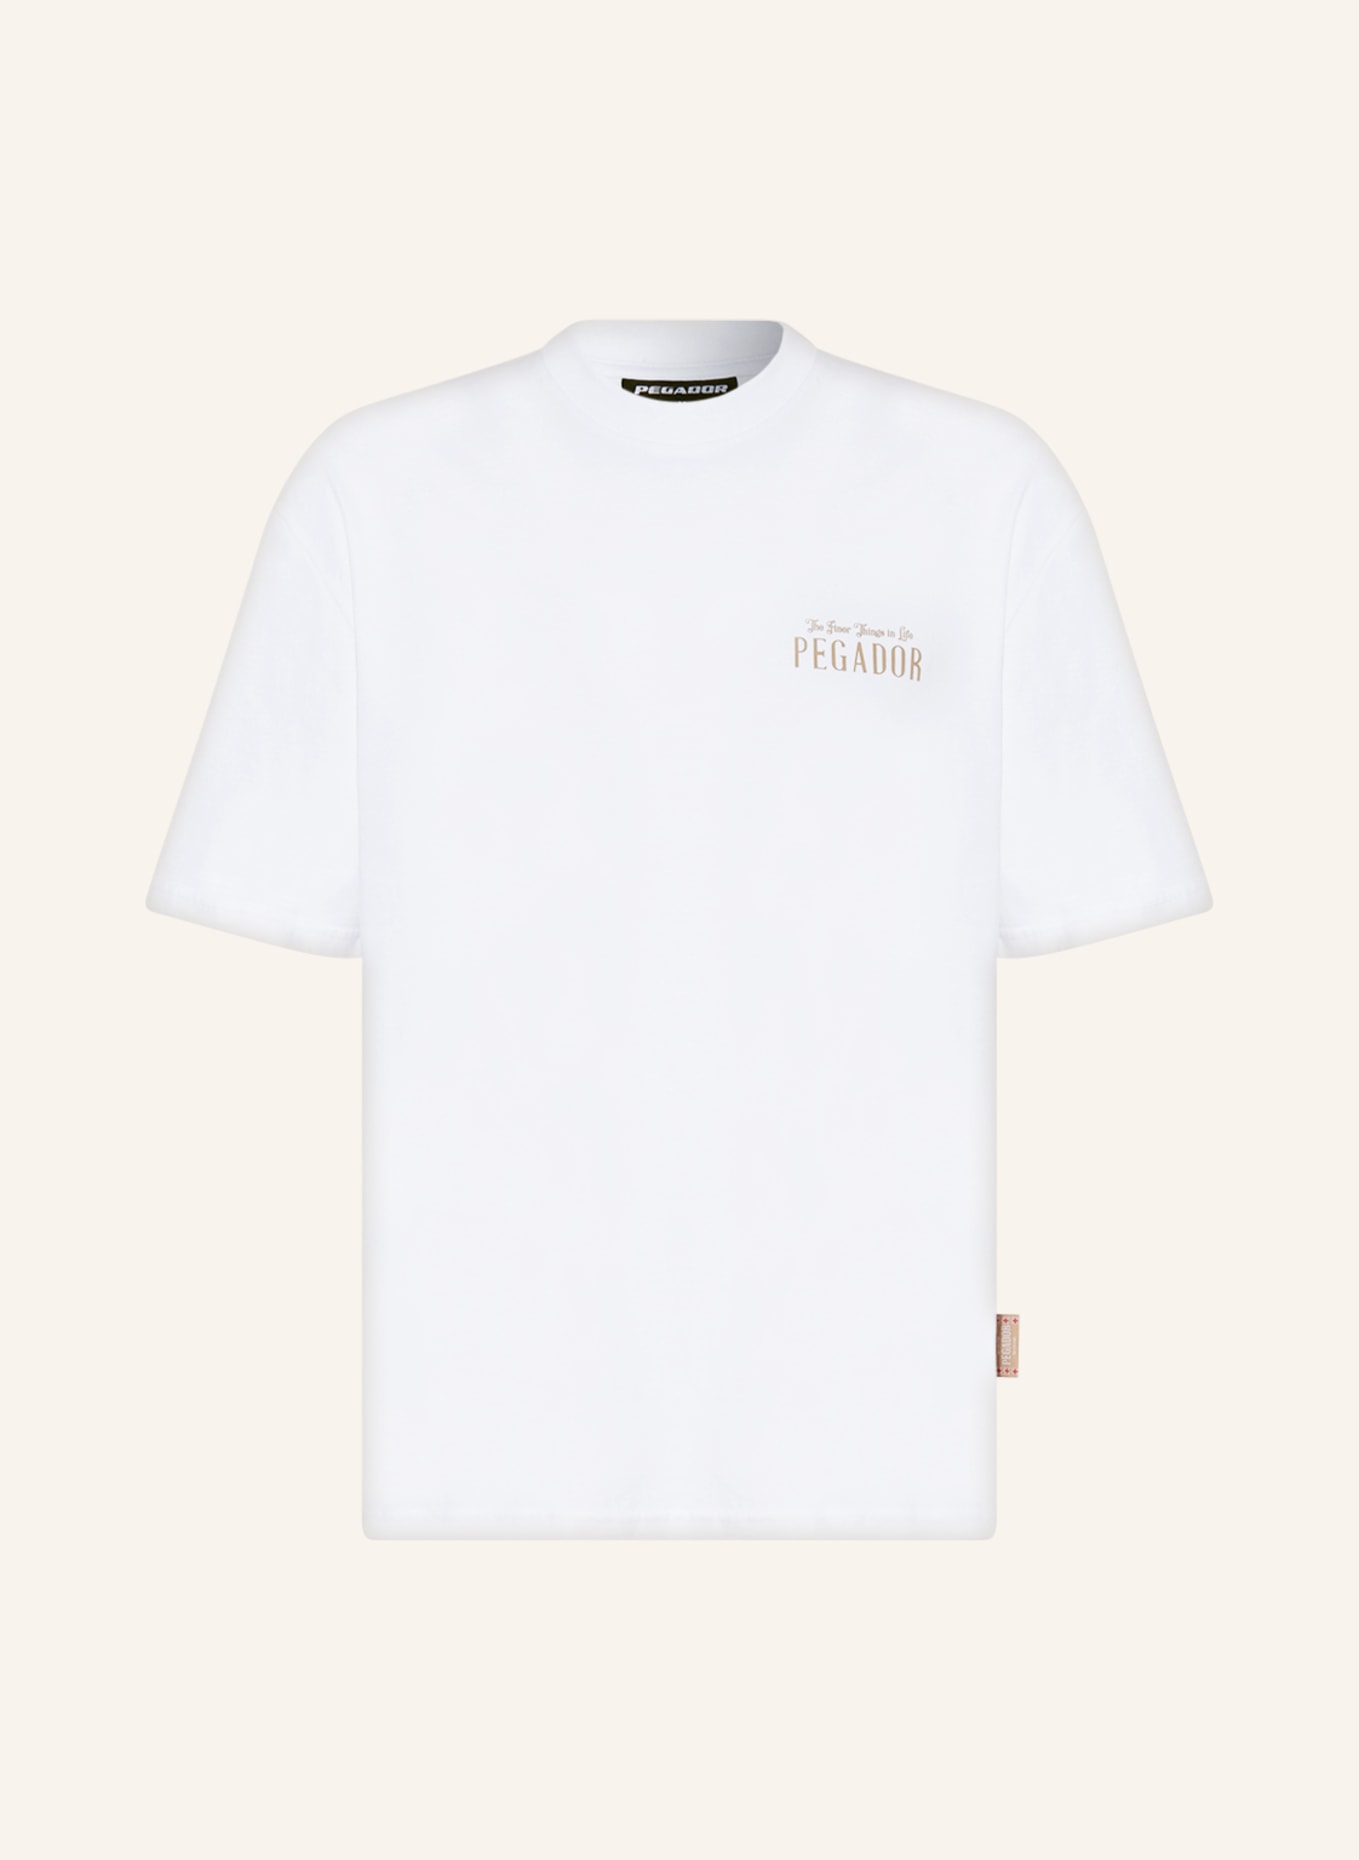 PEGADOR T-shirt LEANDER, Color: WHITE (Image 1)